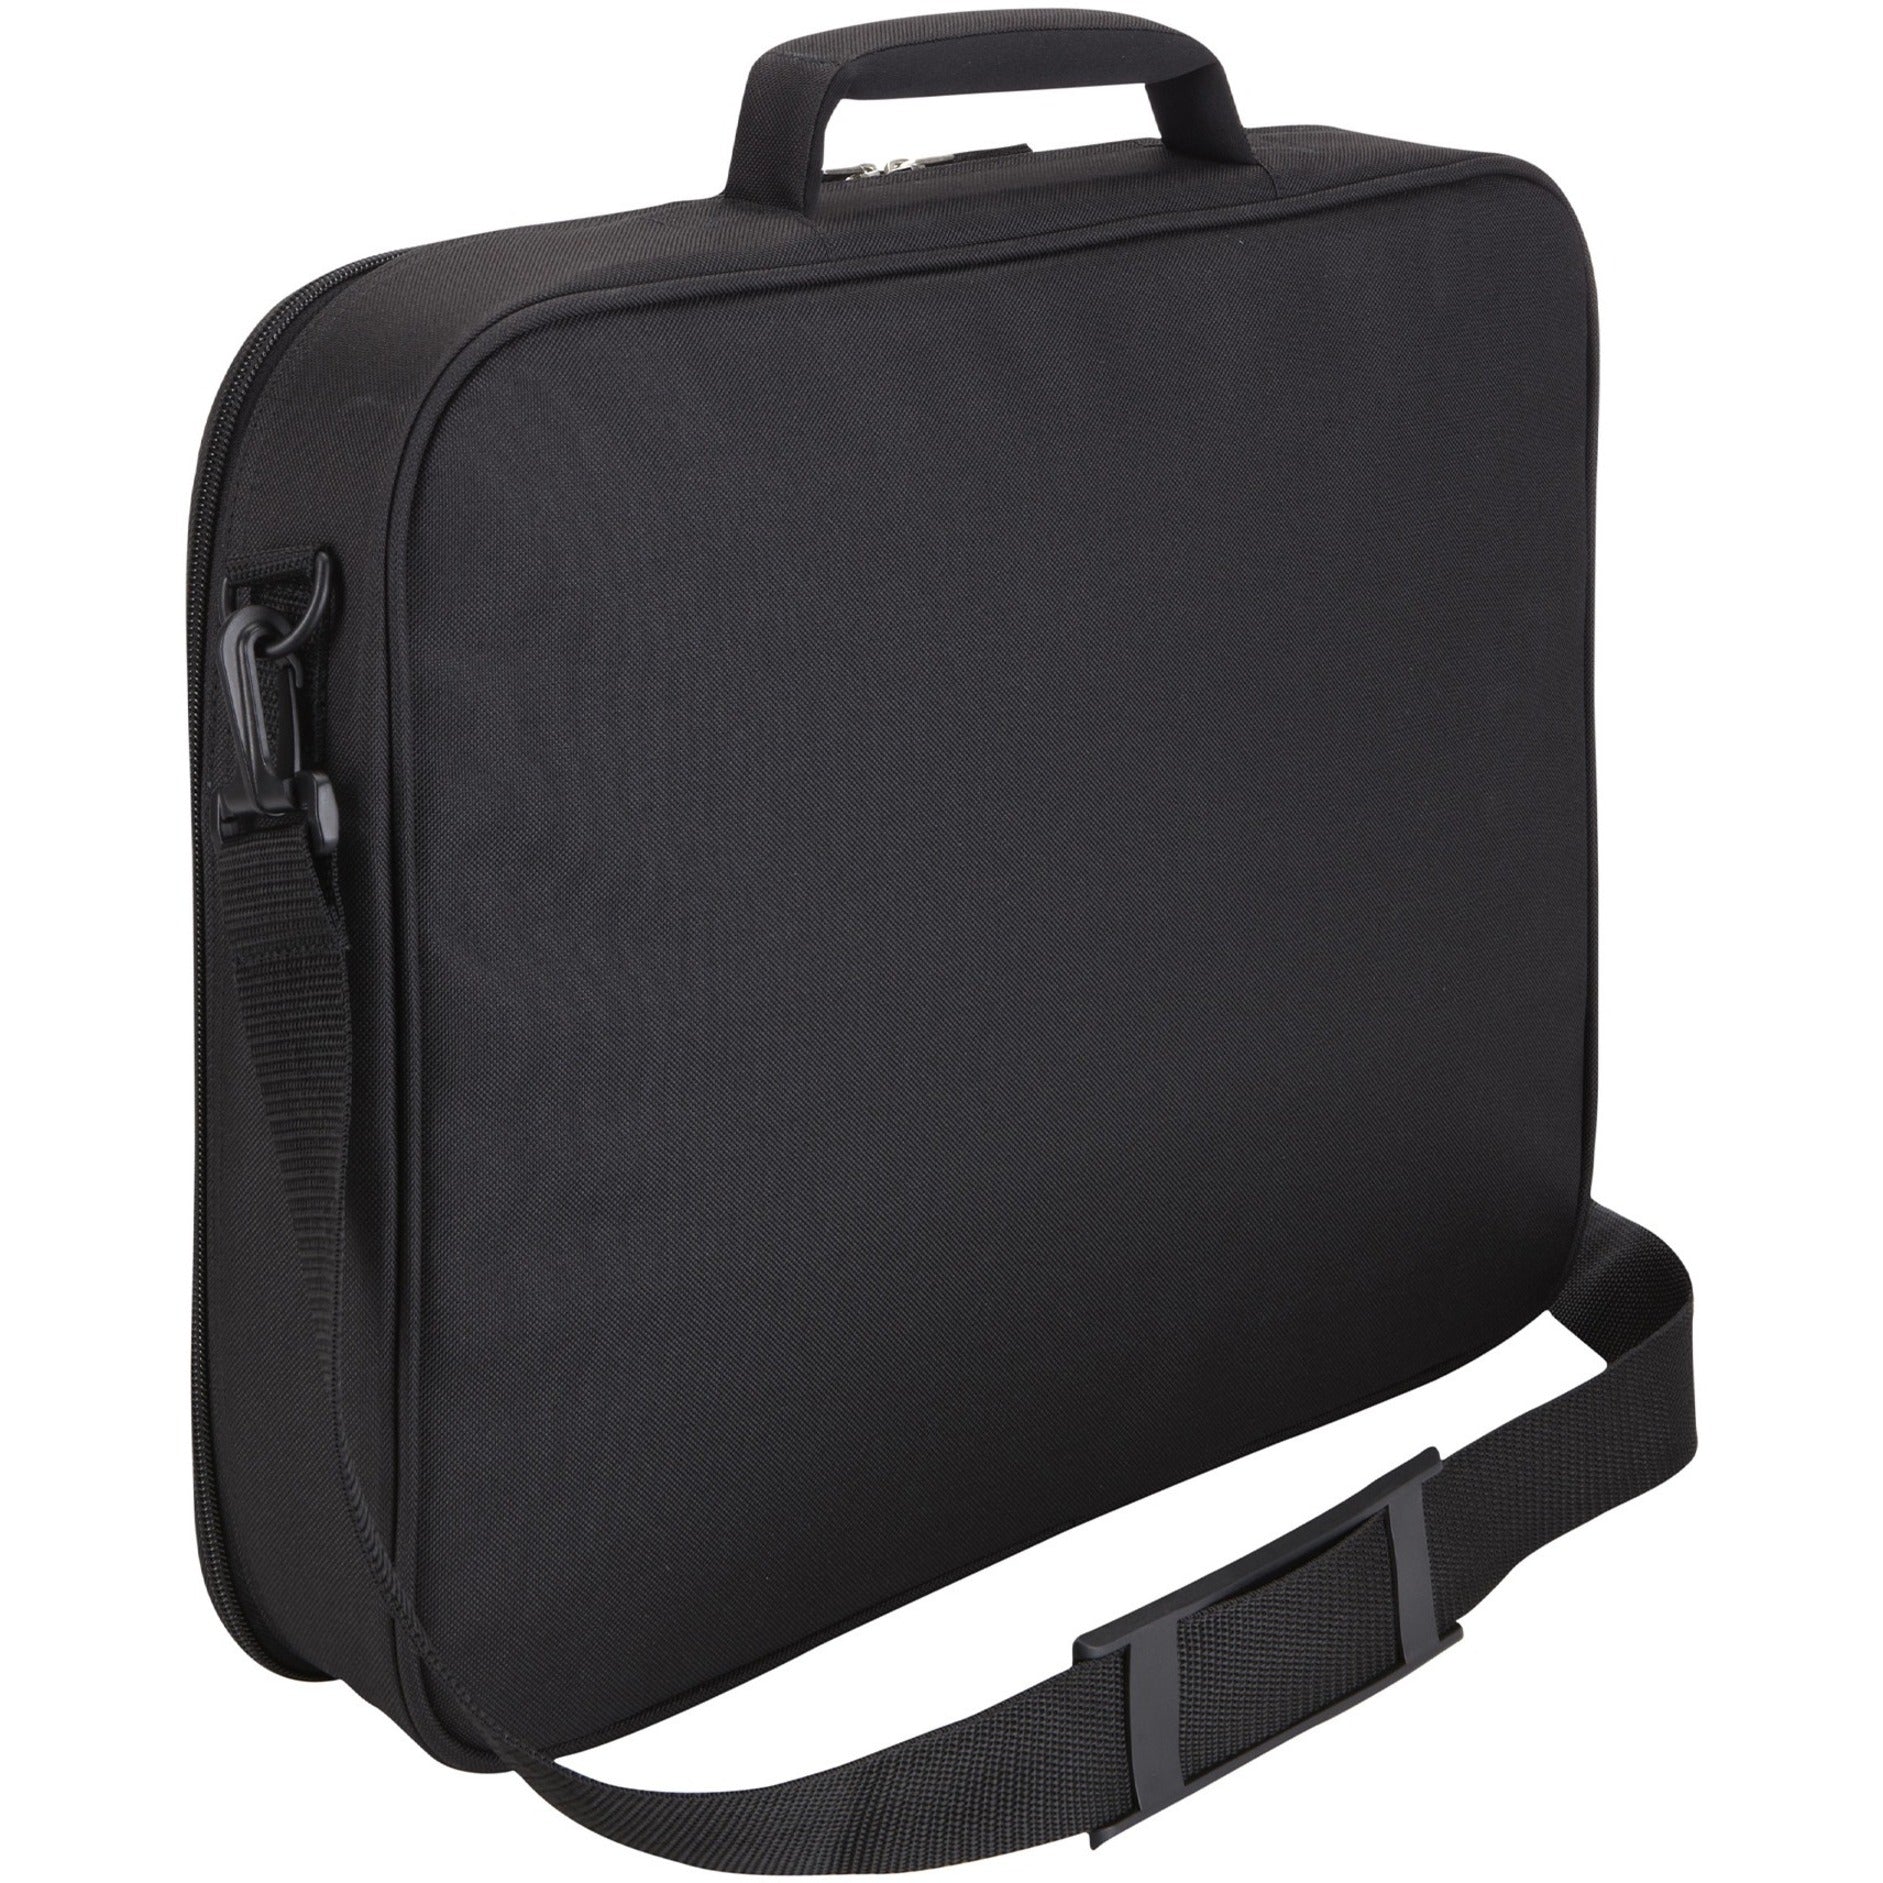 Case Logic 3201491 VNCI-215 15.6" حقيبة حاسوب محمولة، أسود، مقبض، بوليستر العلامة التجارية: كيس منطقة ترجمة اسم العلامة التجارية: كيس منطقة